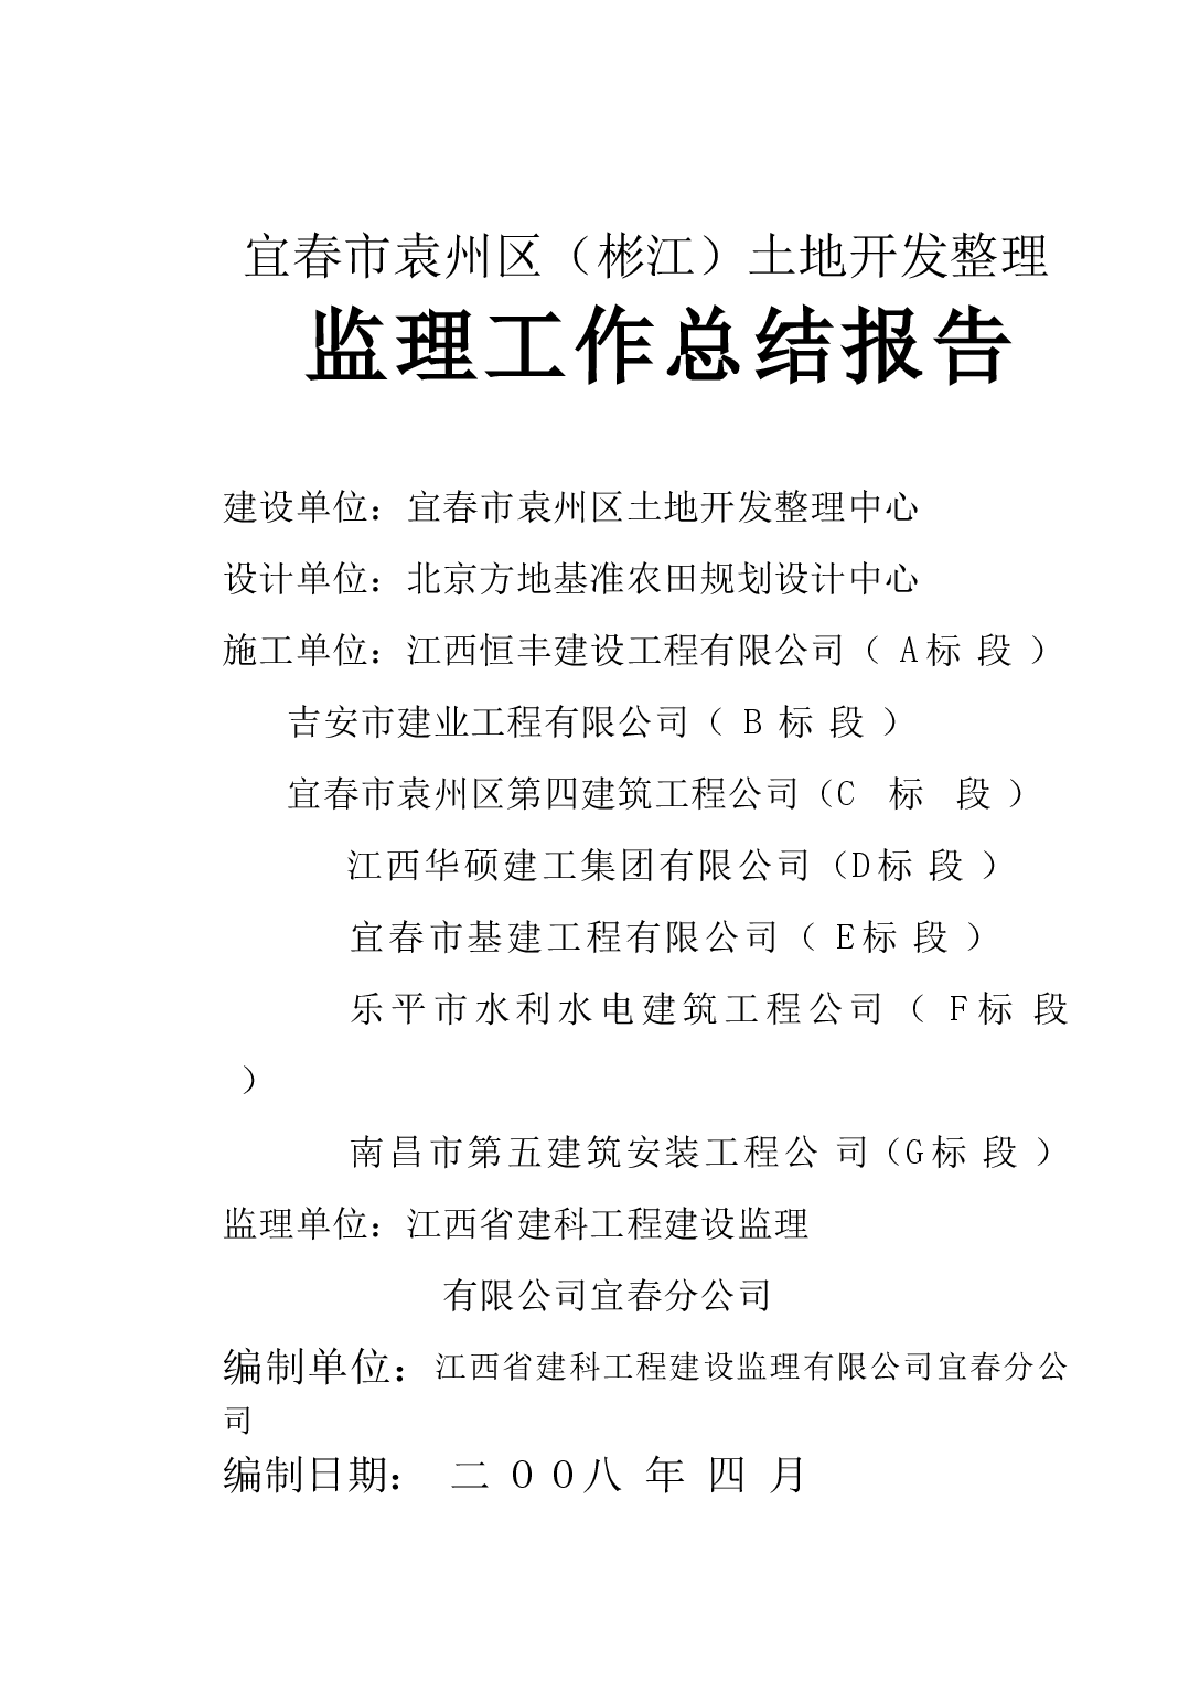 【三比三争】宜春彬江镇开展铁路护路宣传巡查工作_人民号